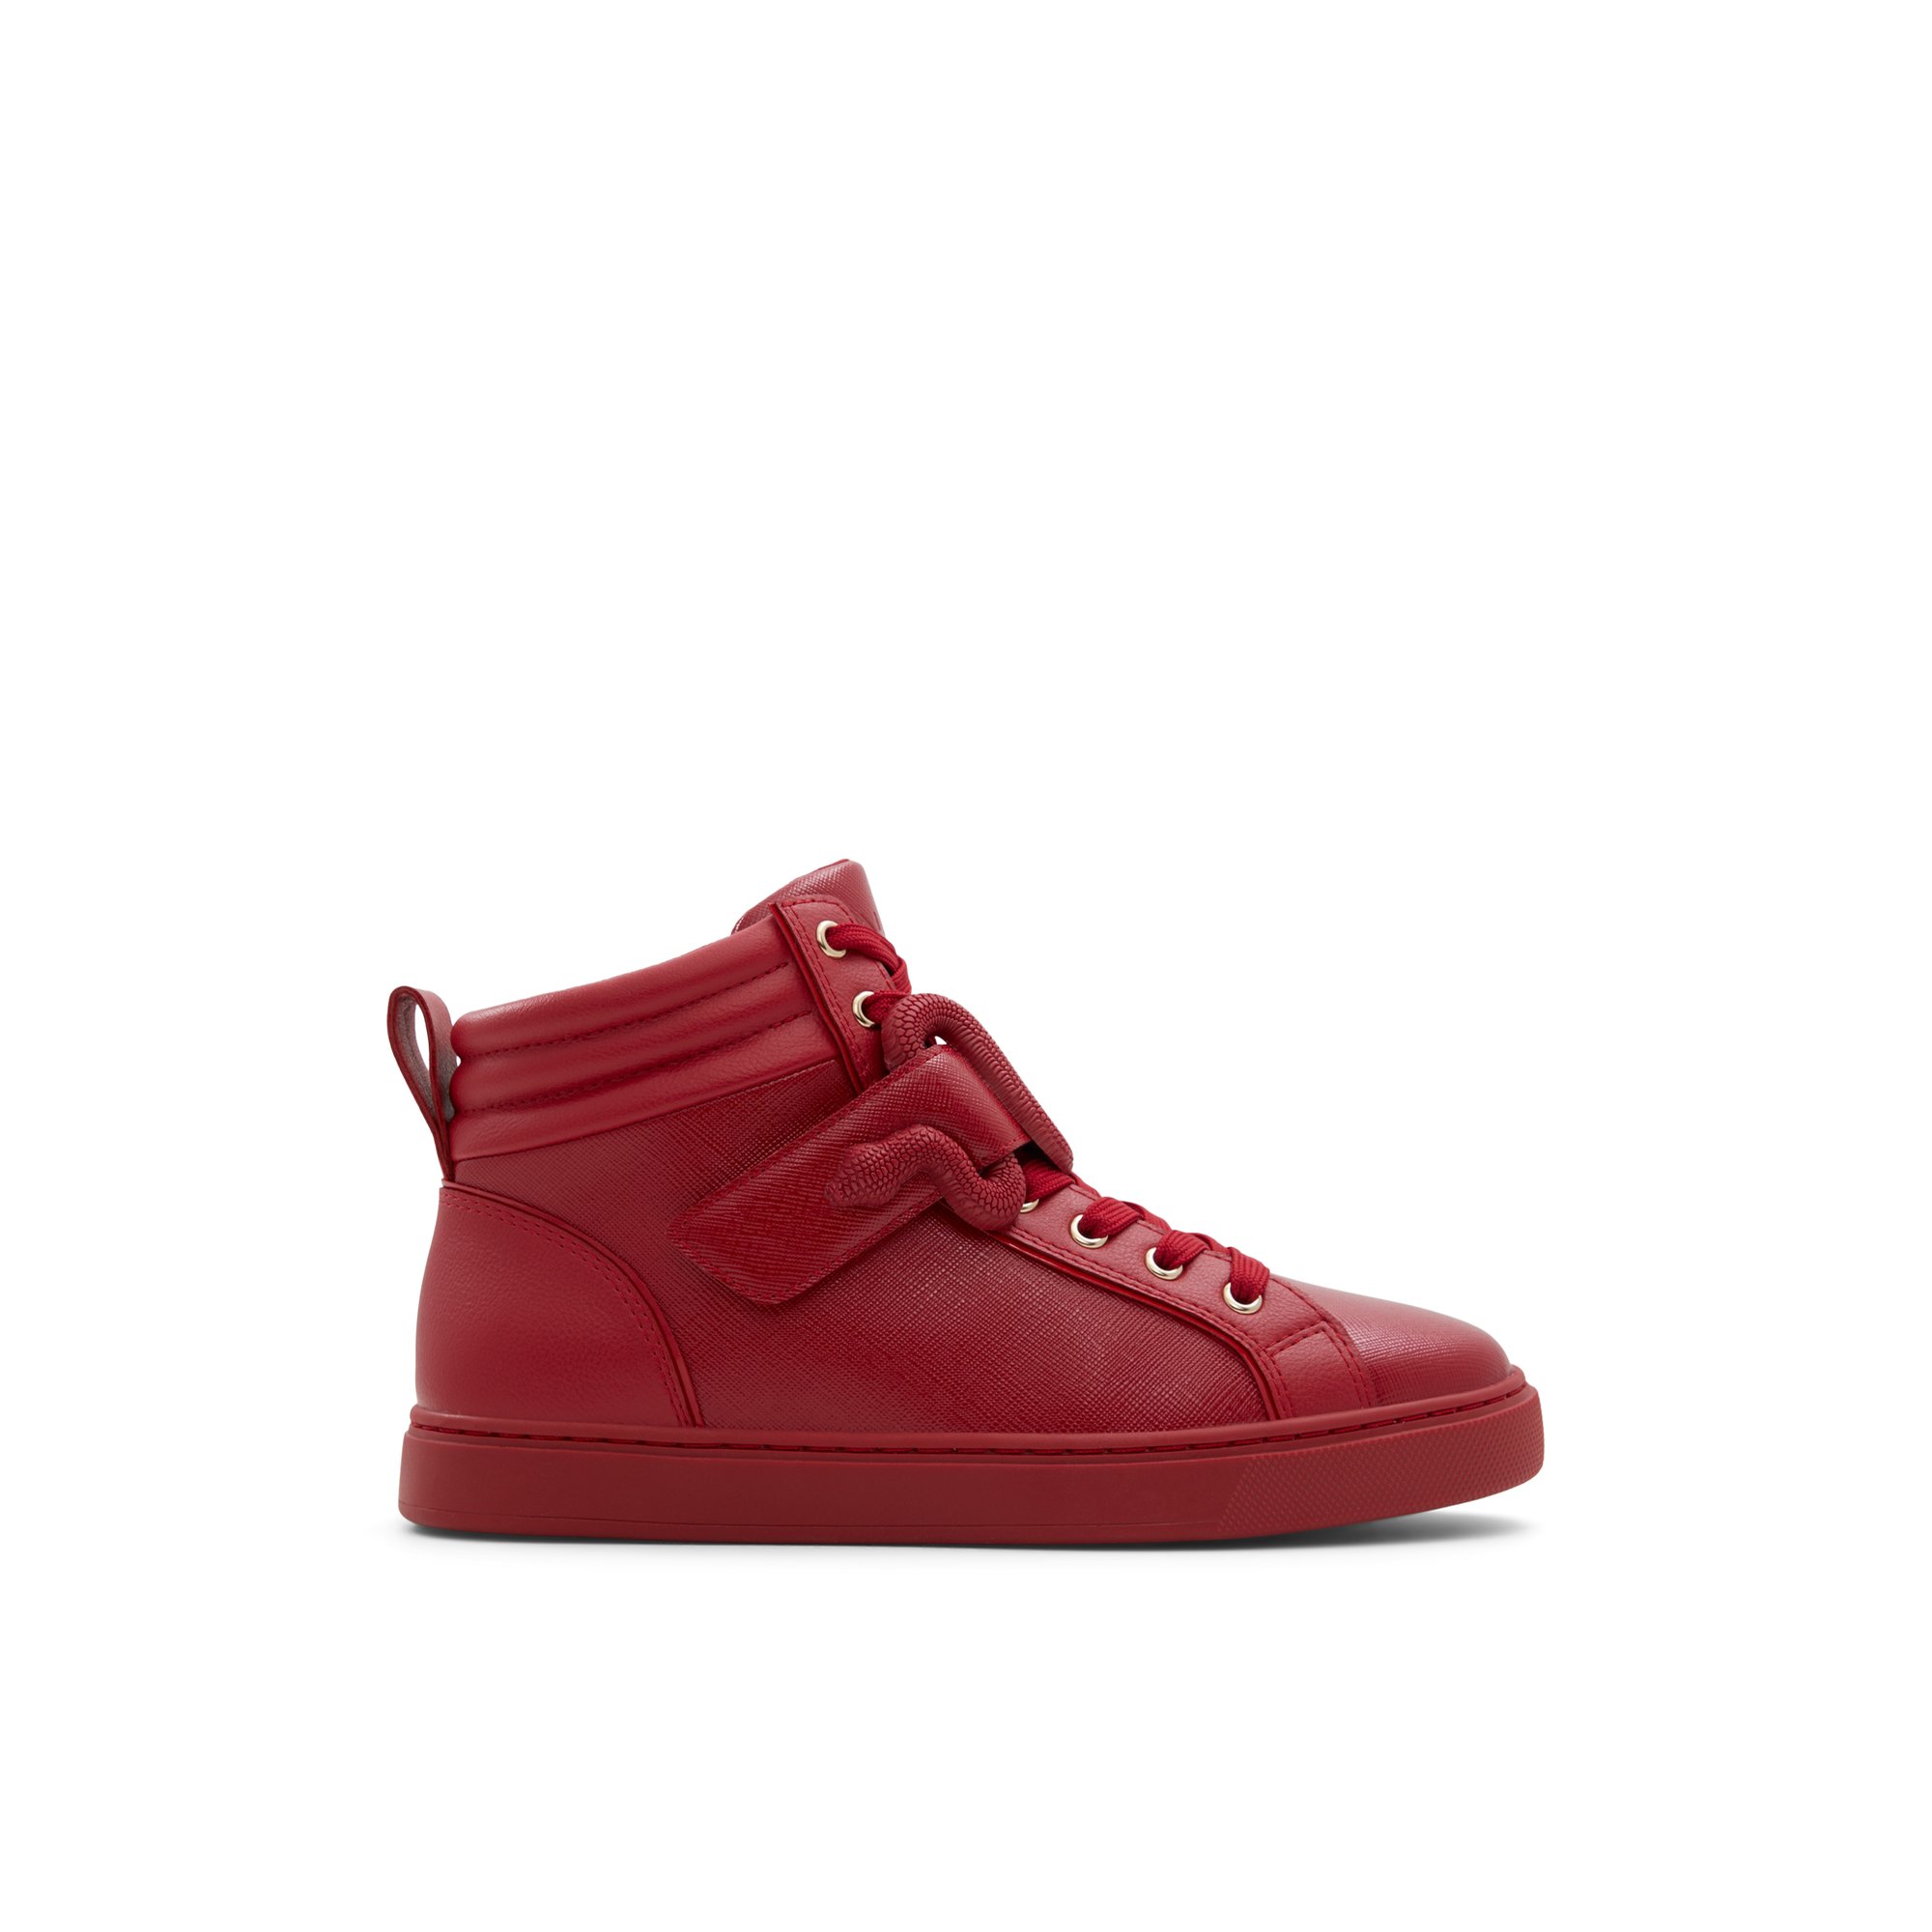 ALDO Dwia - Women's High Top Sneaker Sneakers - Red